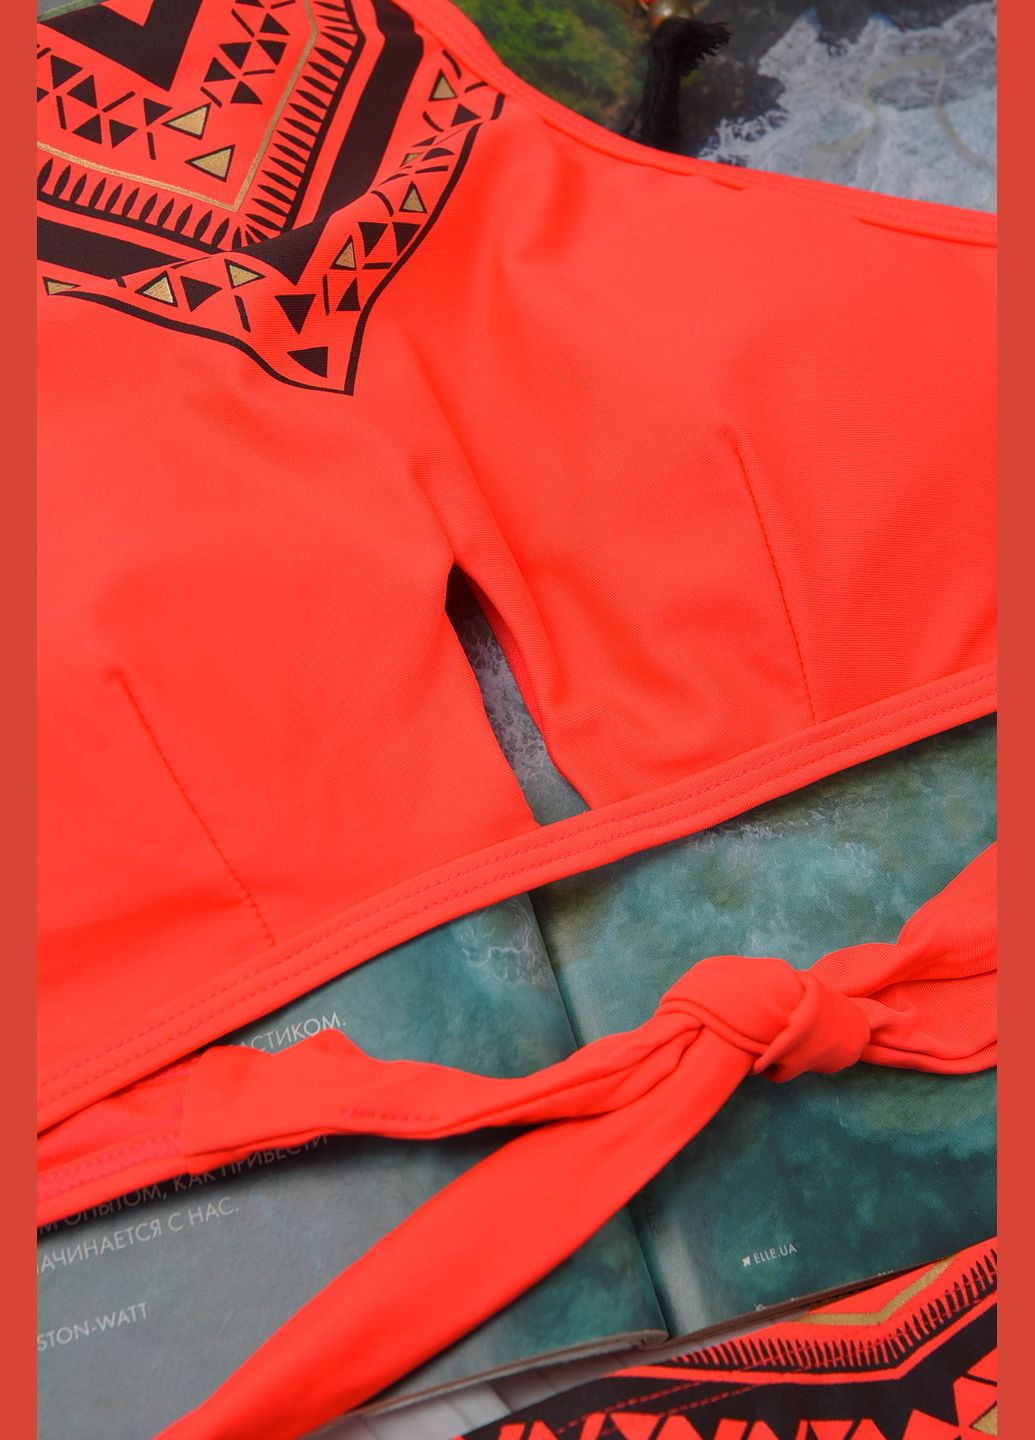 Оранжевый летний купальник женский оранжевого цвета чашка в бикини Let's Shop